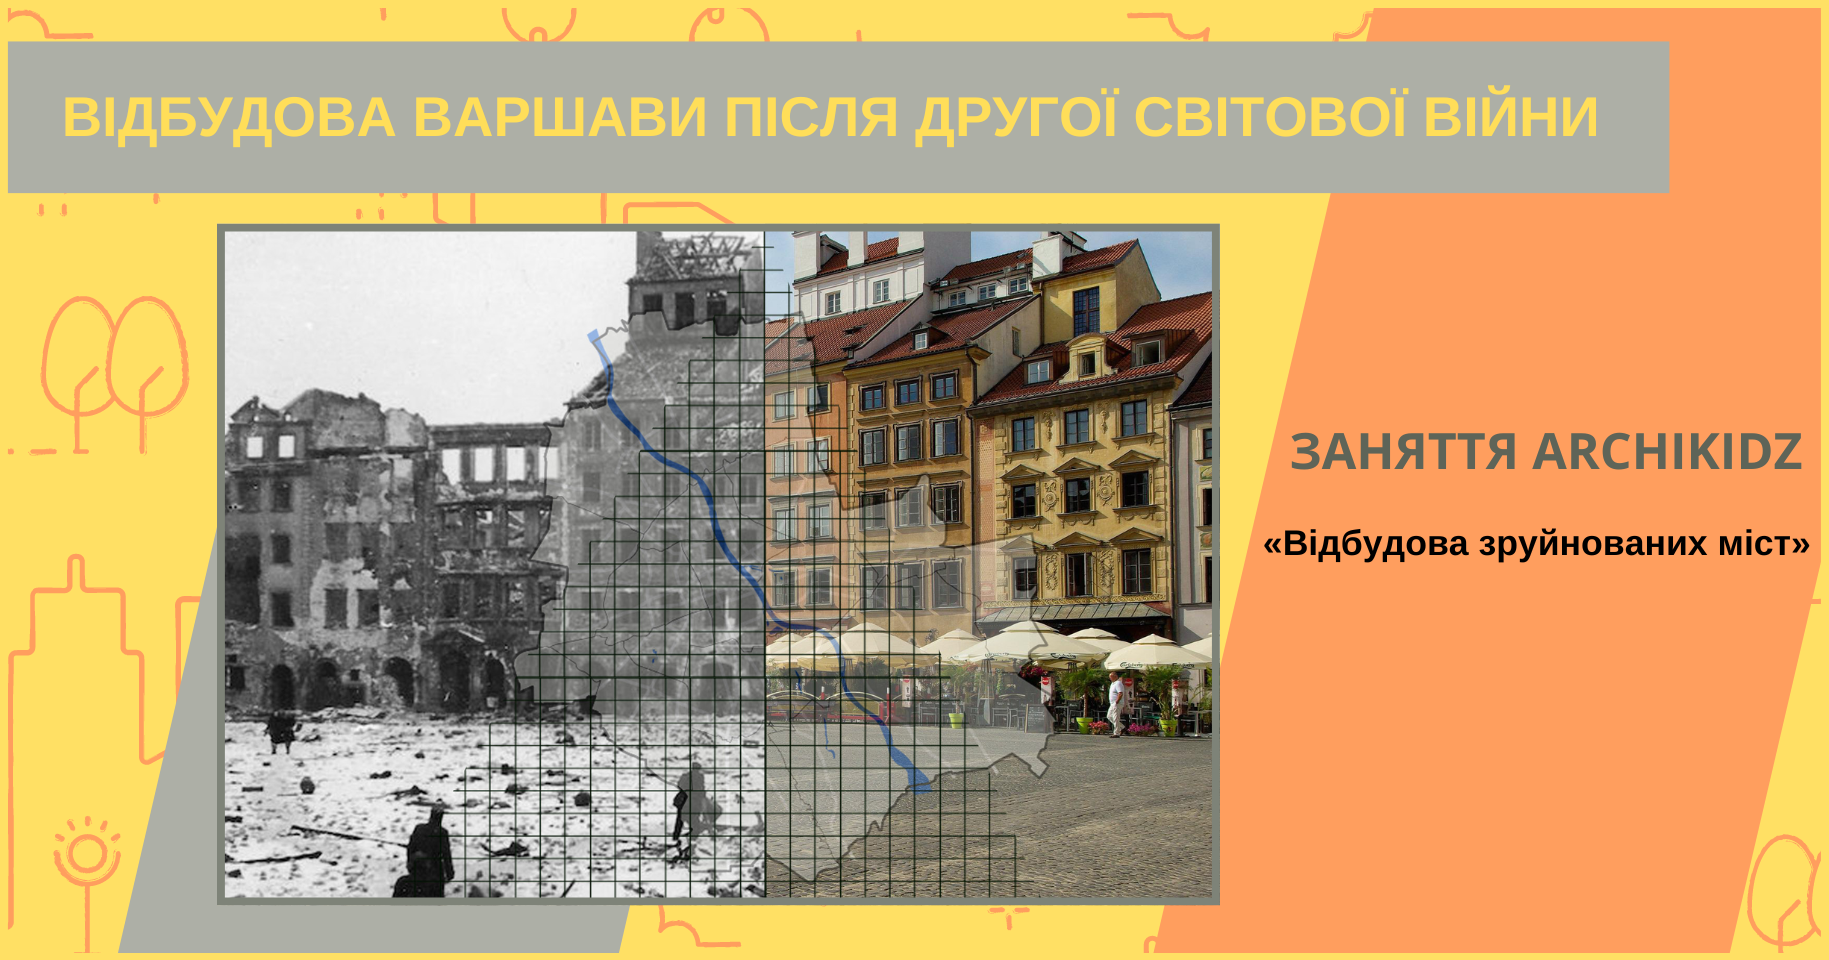 Заняття ARCHIKIDZ: «Архітектура, історія та суспільство: приклади світової практики відбудови зруйнованих міст. Відбудова Варшави»